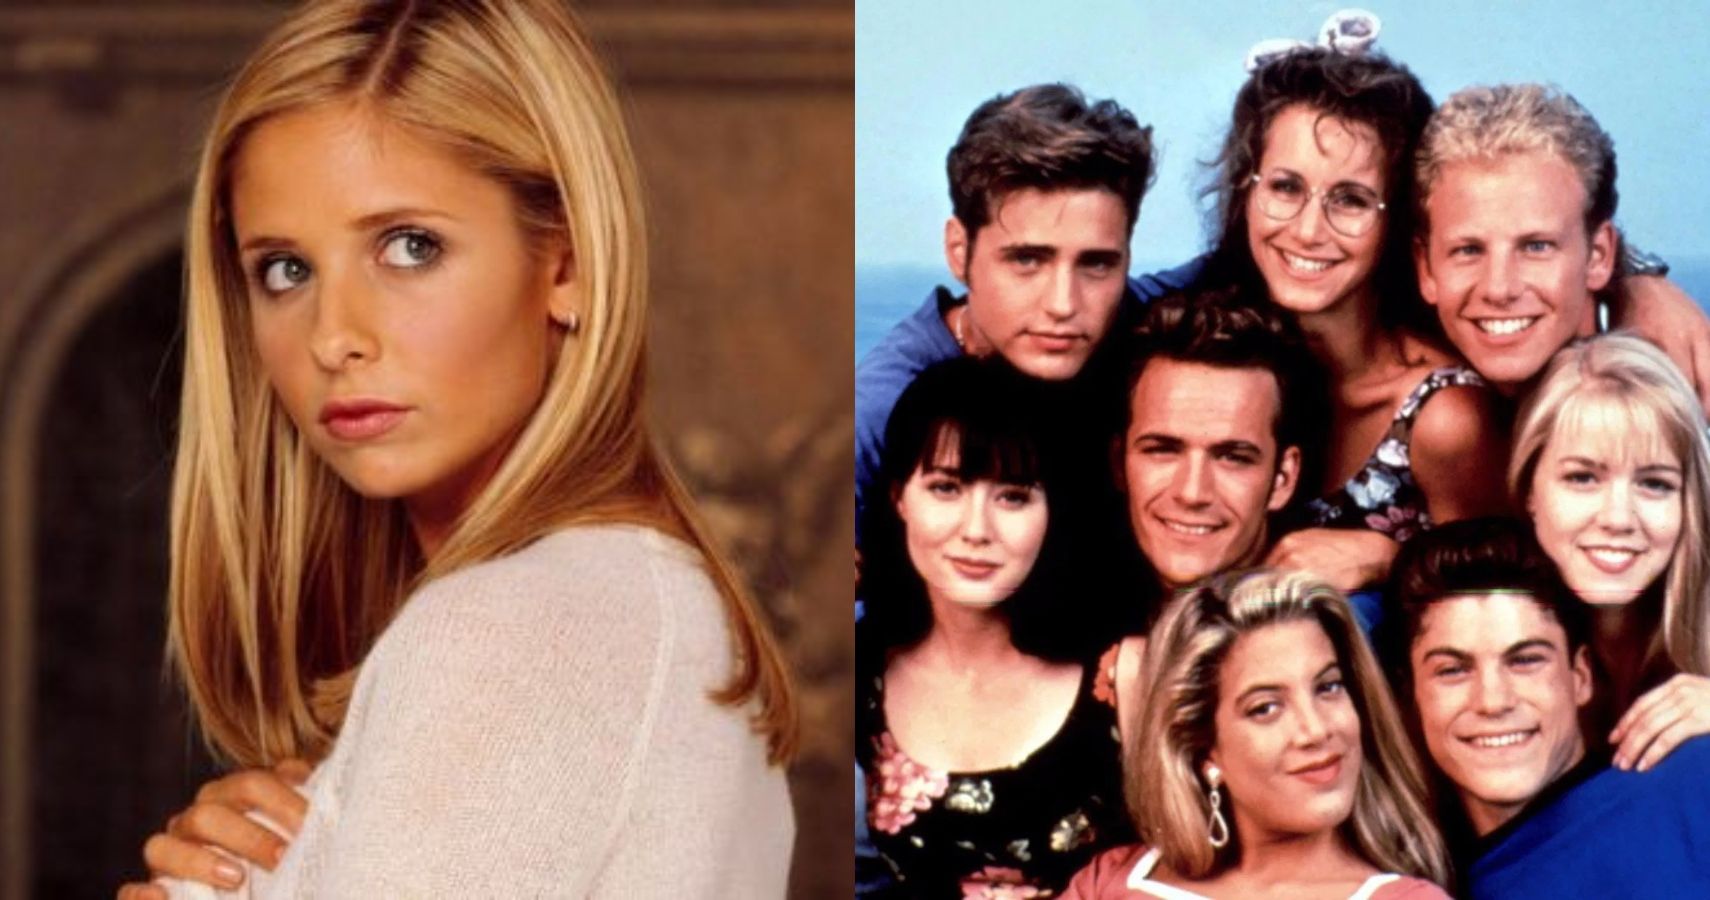 Los 10 mejores programas para adolescentes de los 90 según Ranker